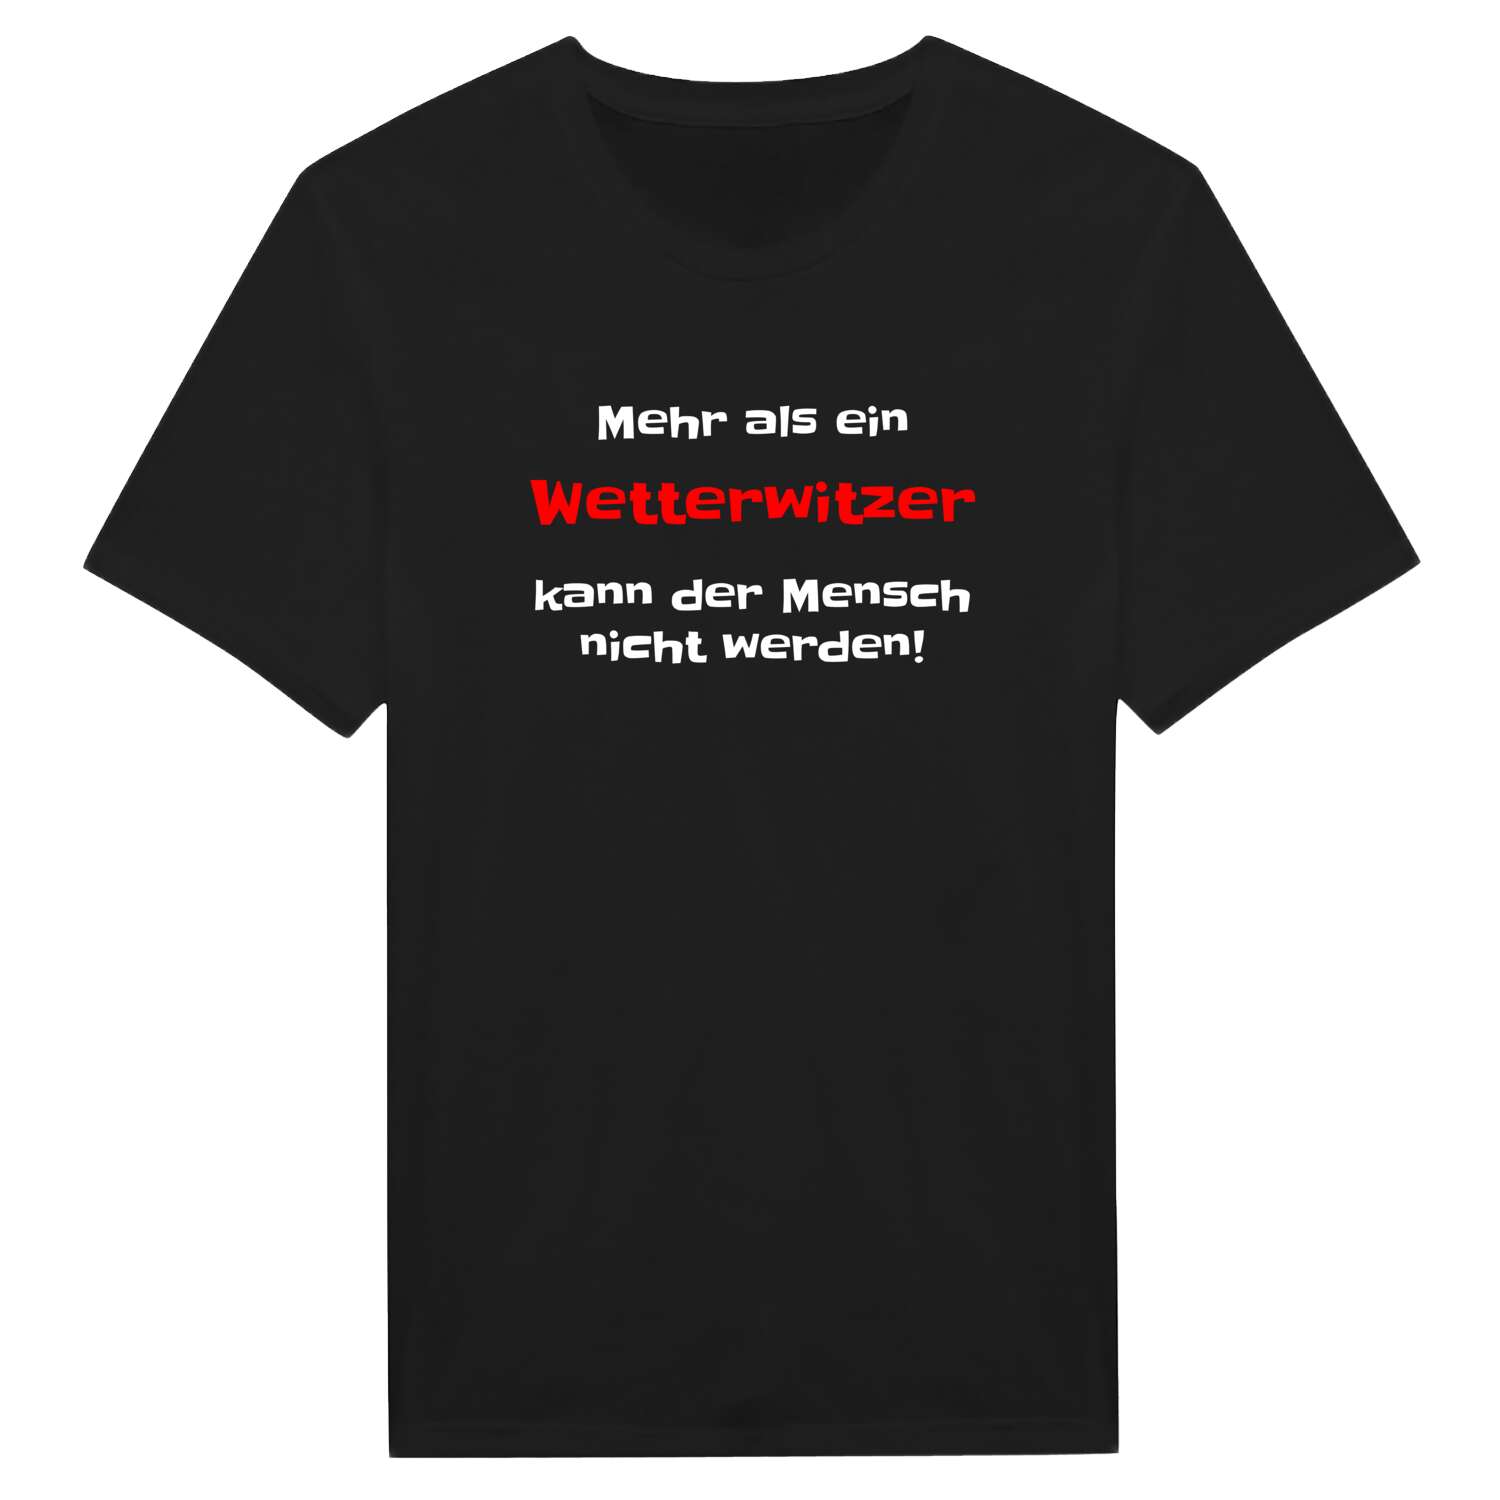 Wetterwitz T-Shirt »Mehr als ein«